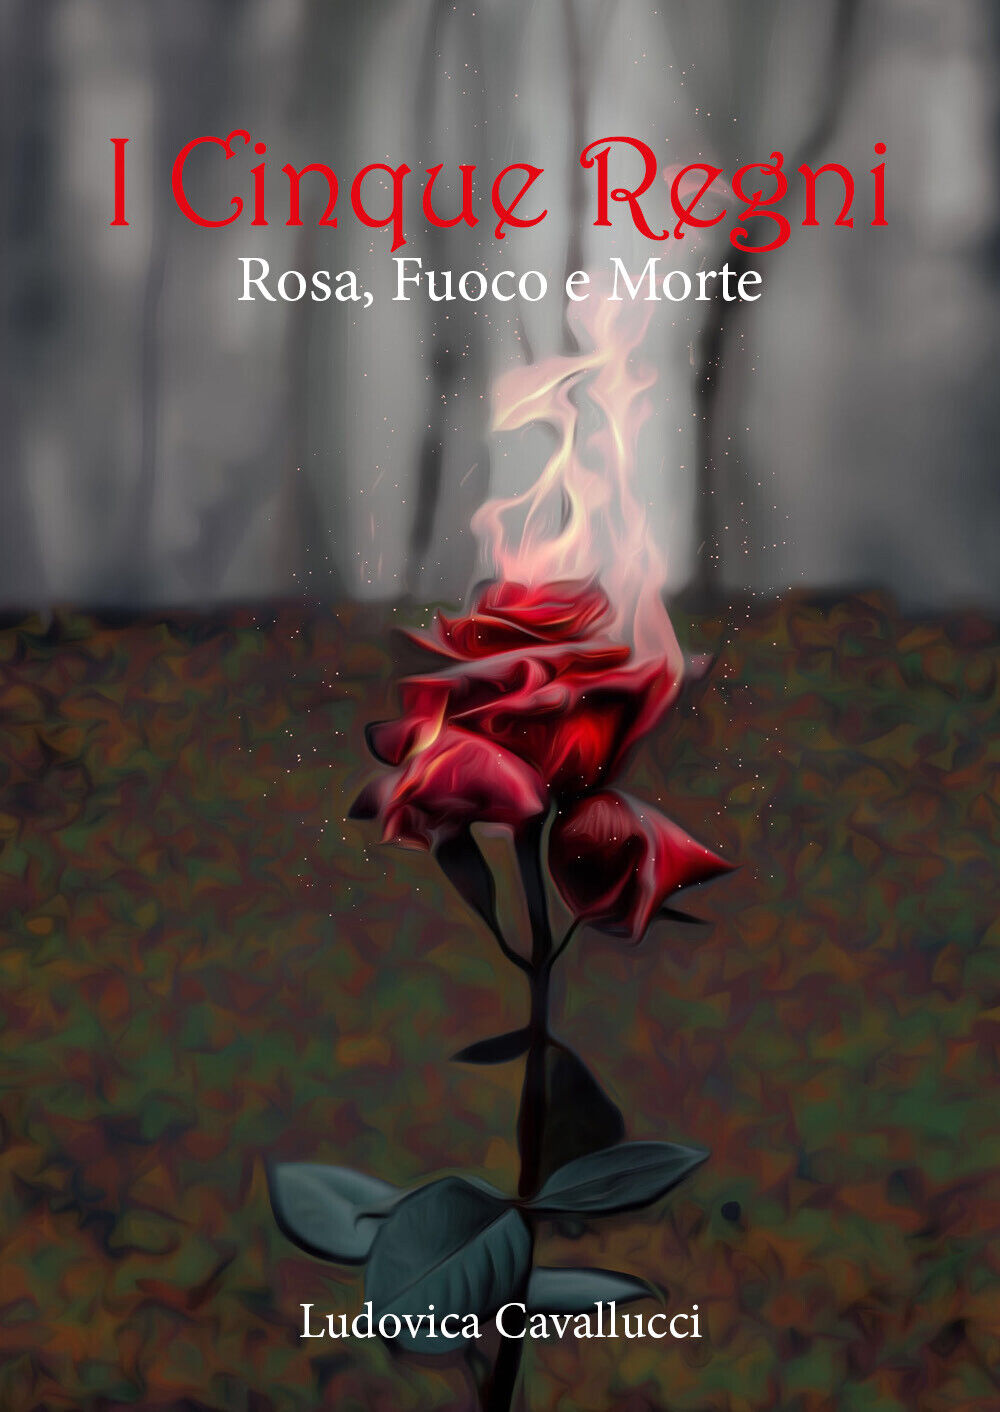 Rosa, fuoco e morte. I cinque regni di Ludovica Cavallucci,  2021,  Youcanprint